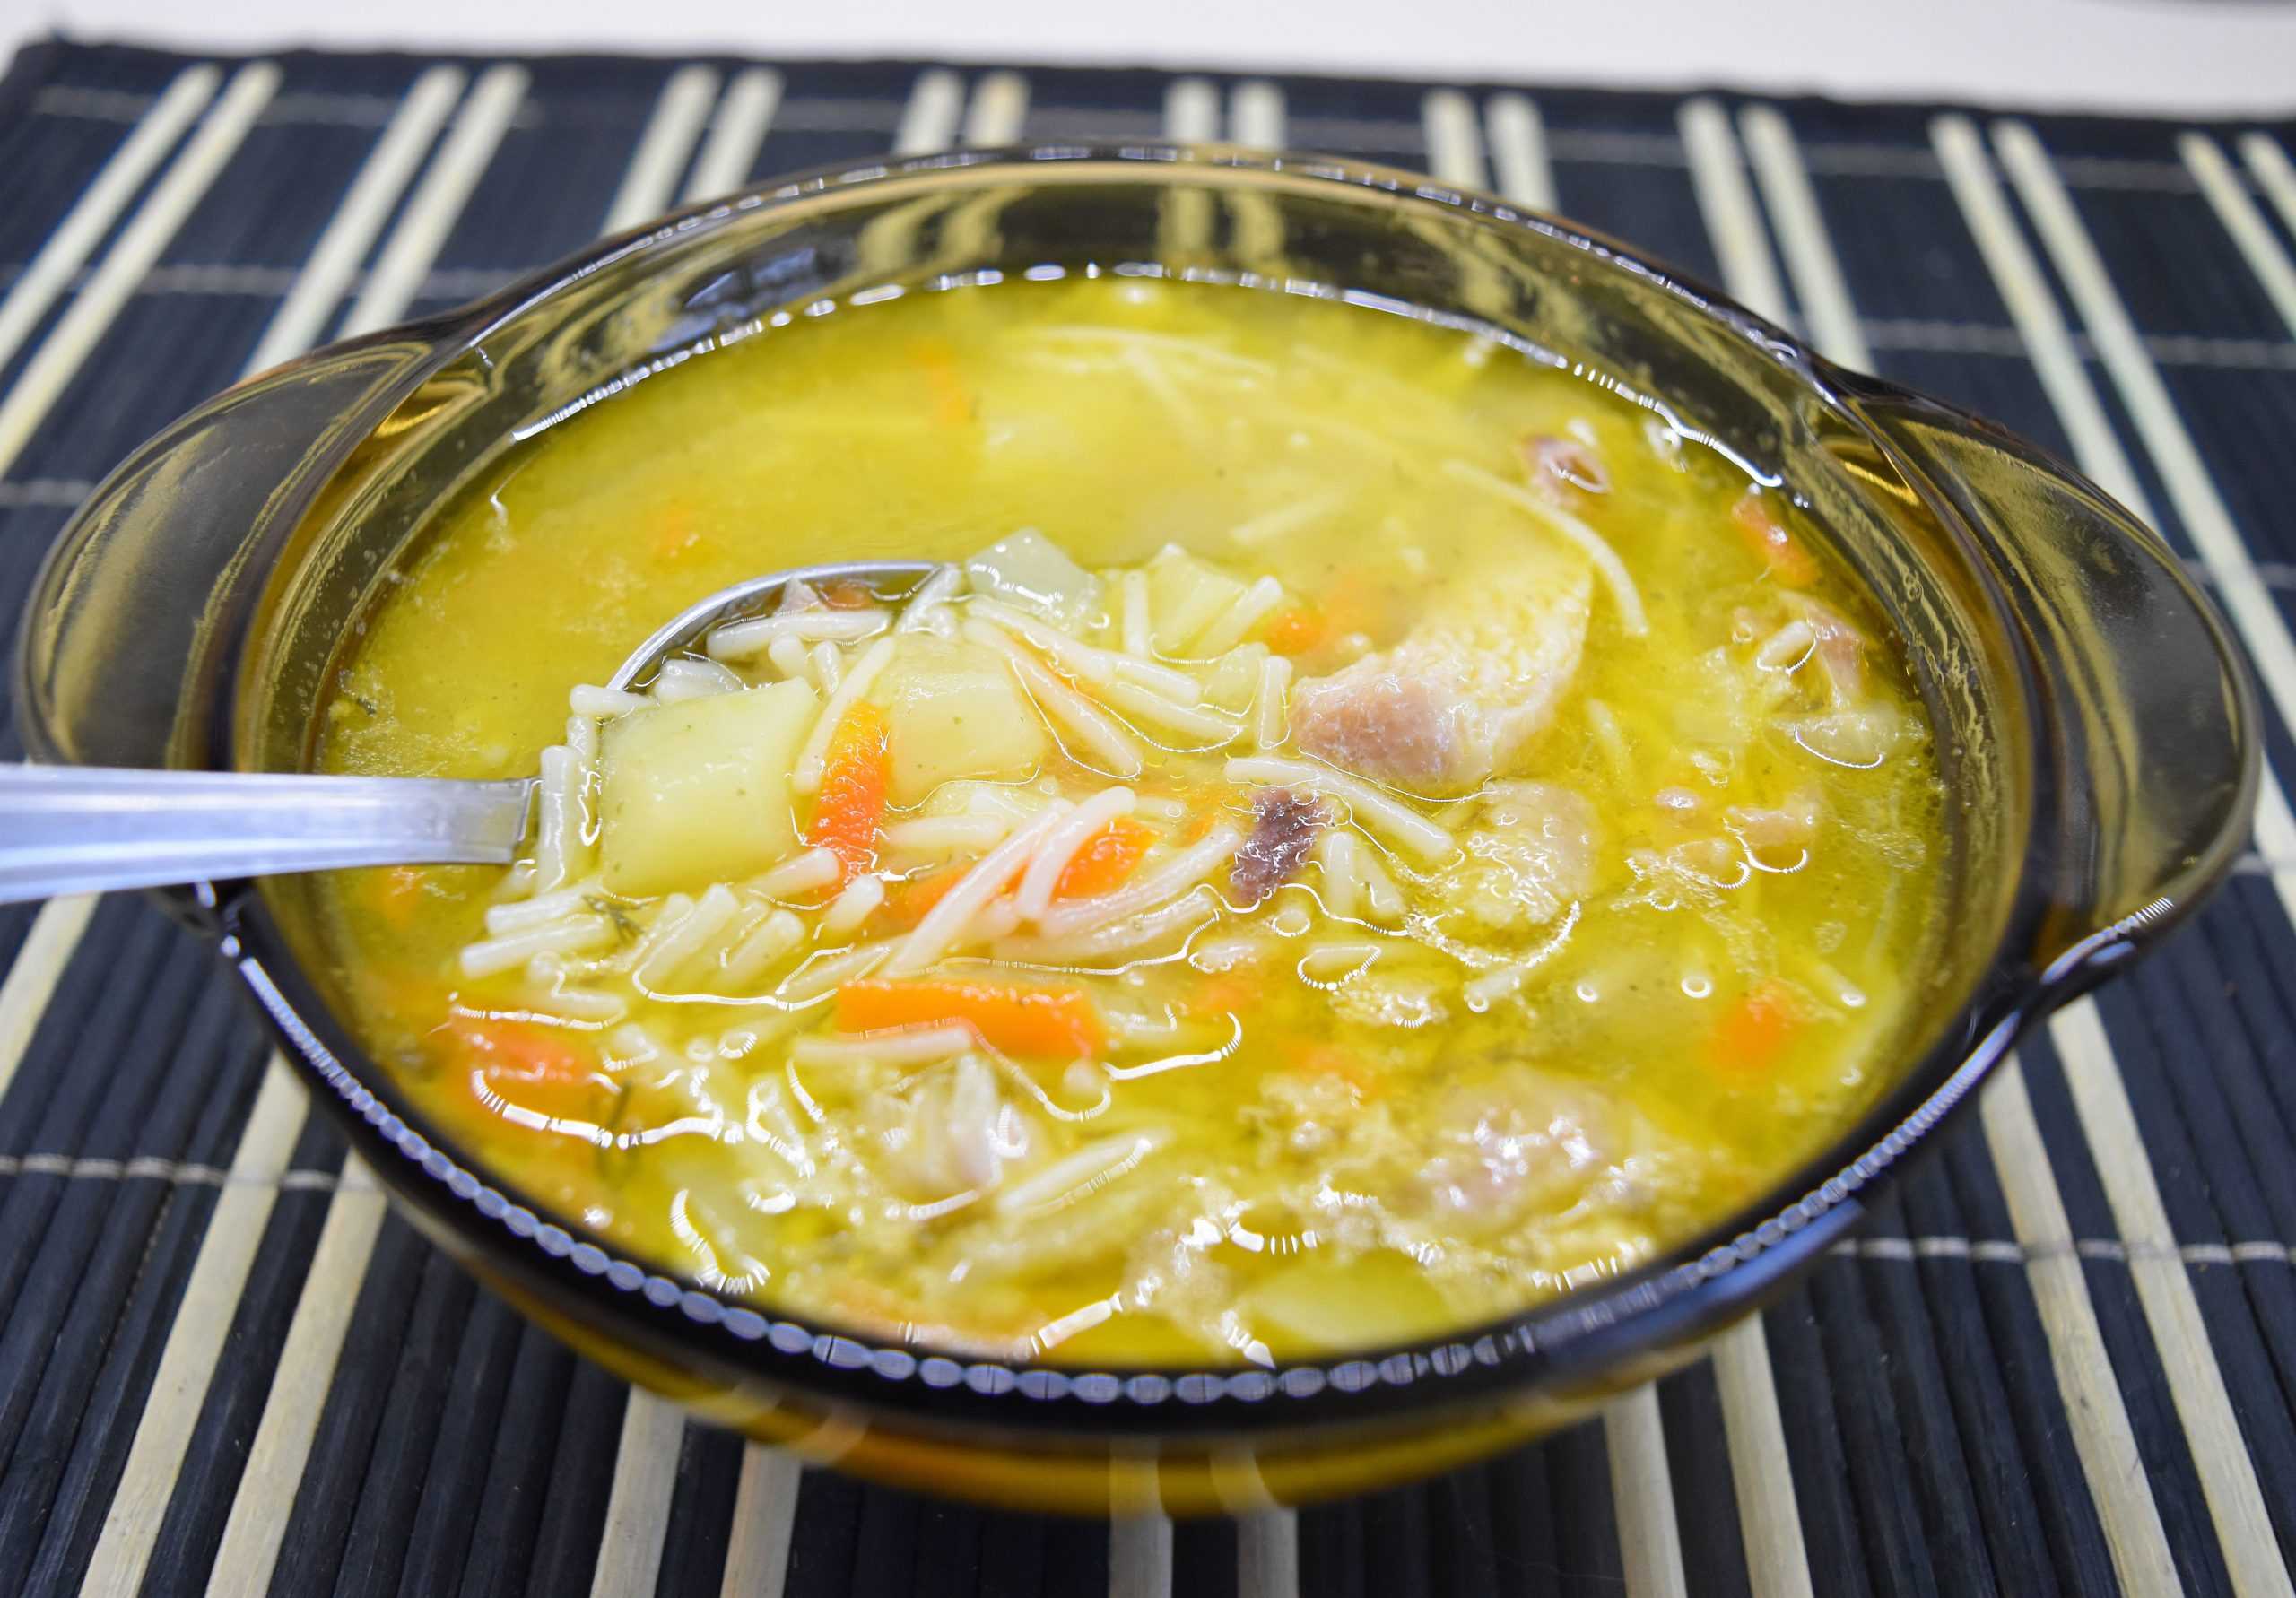 Нежный и вкусный картофельный суп-пюре на курином бульоне